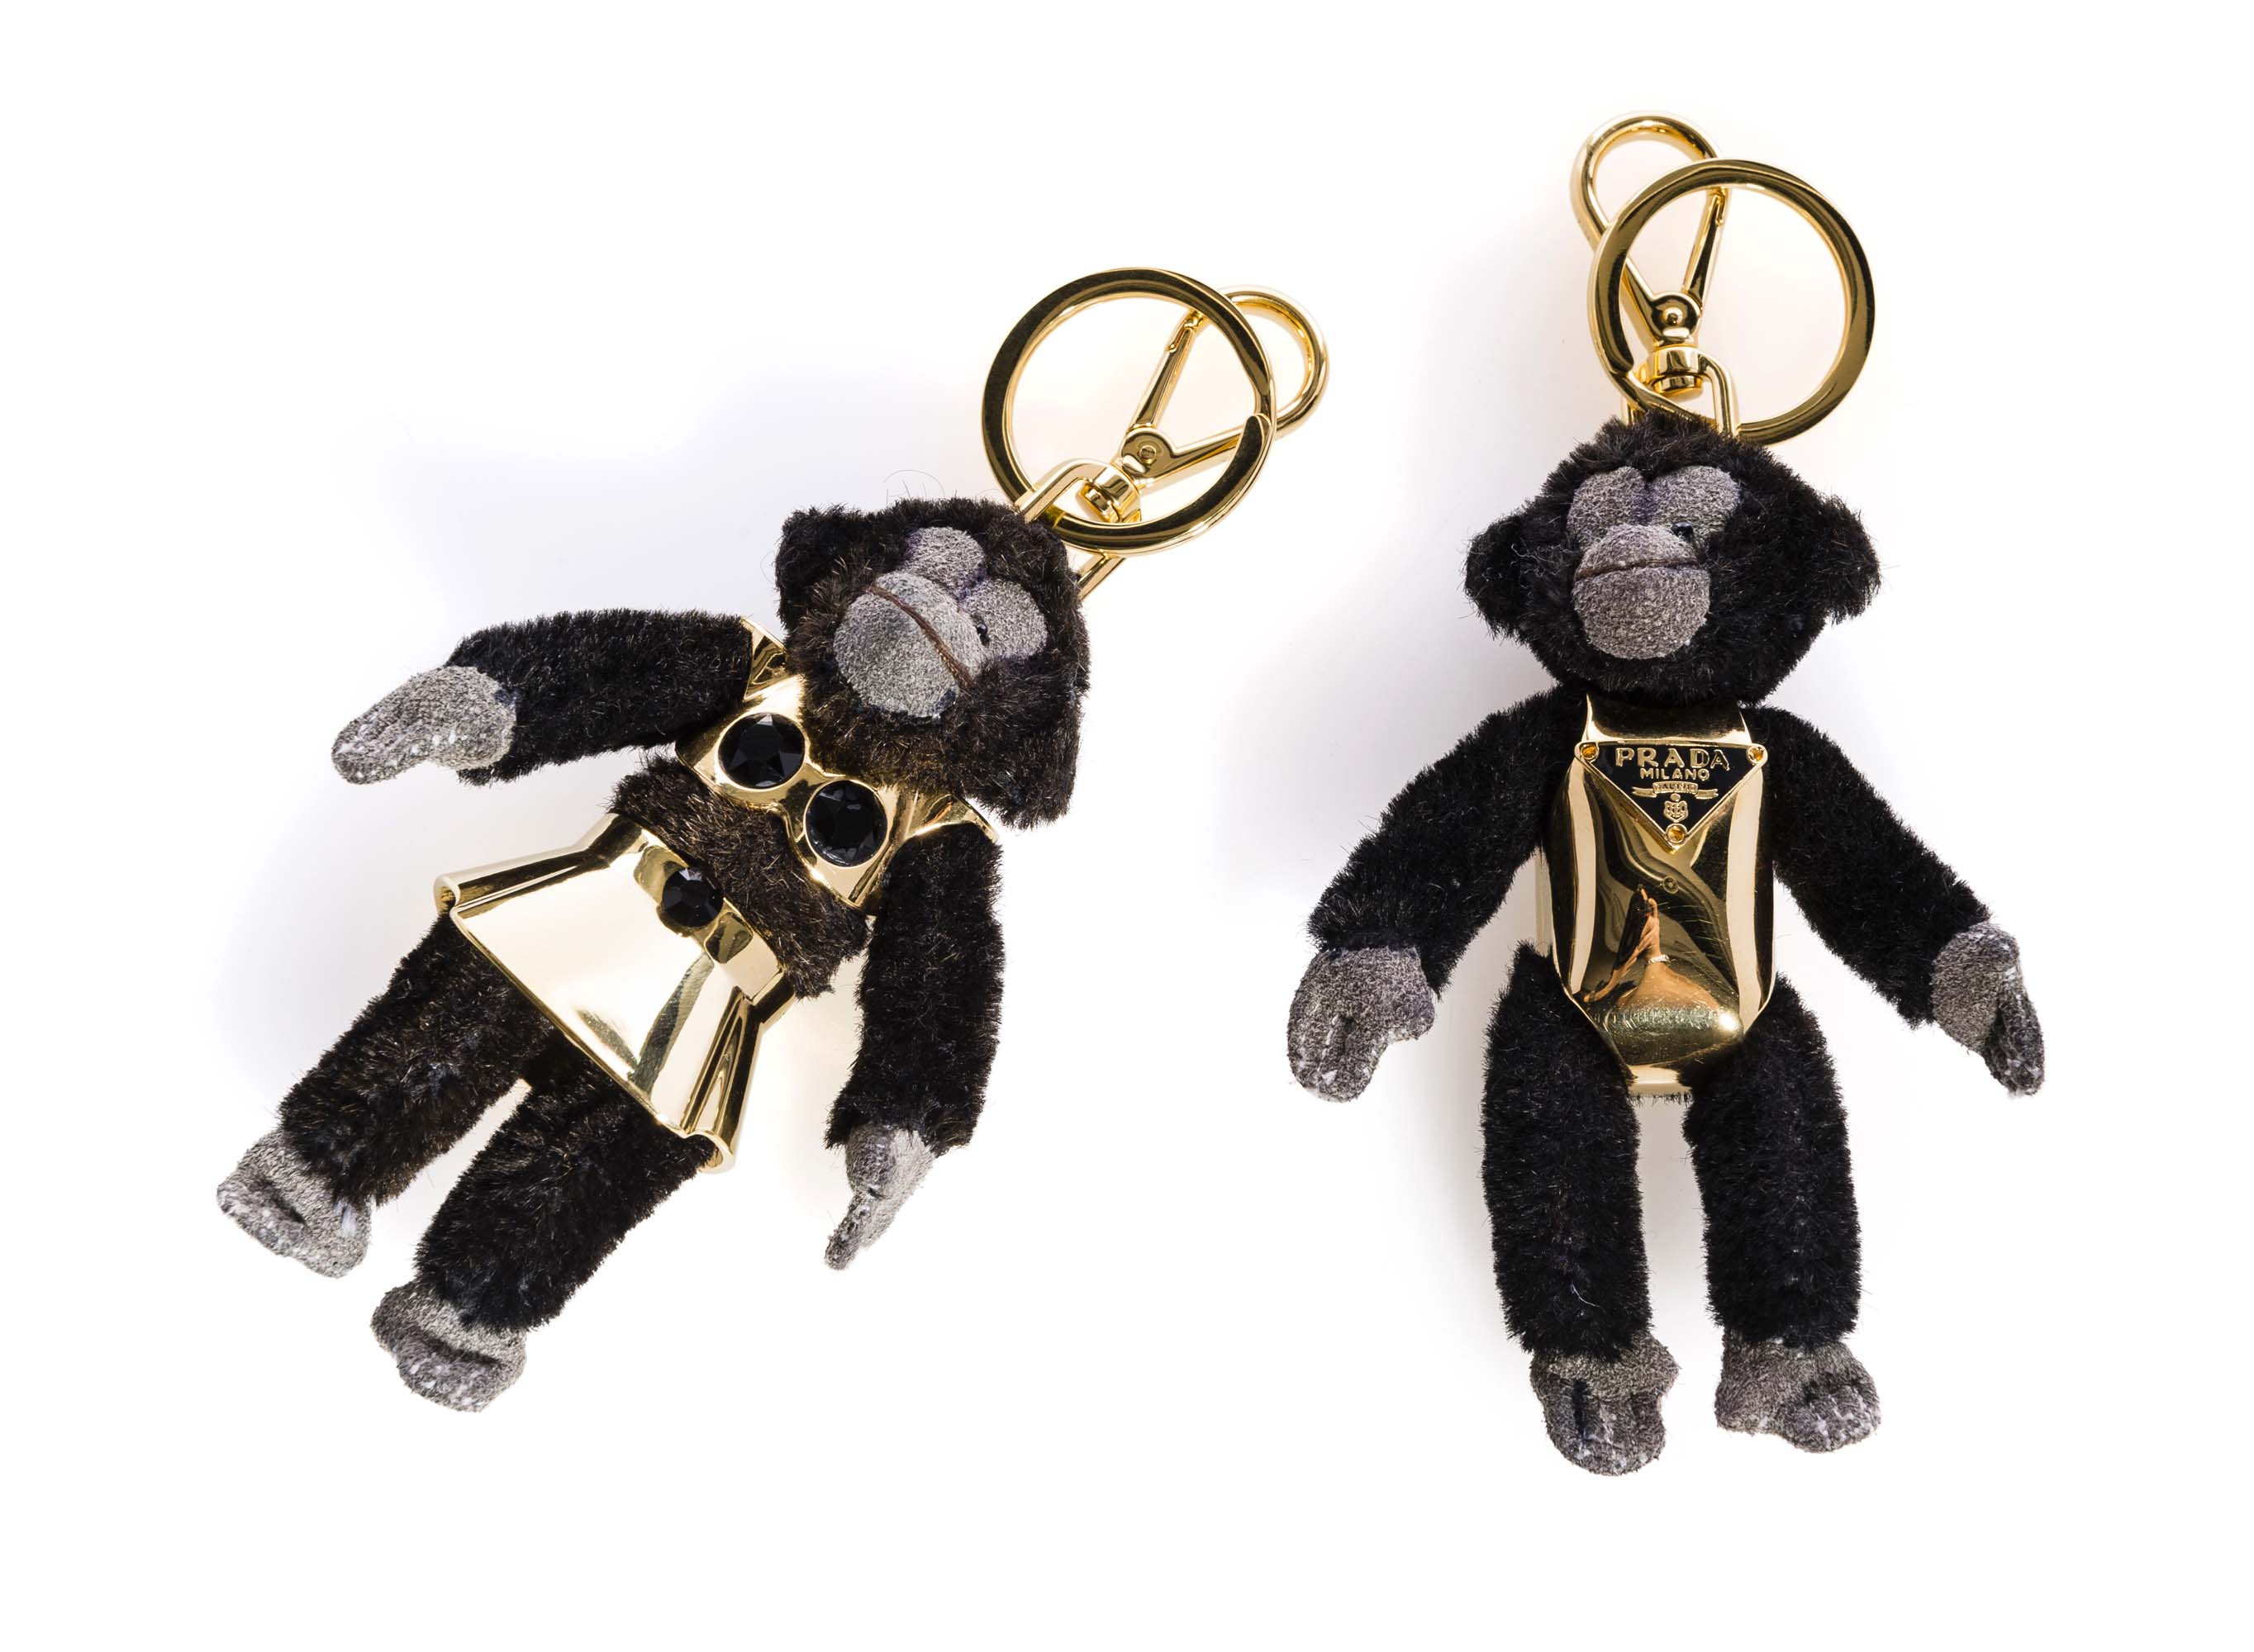 prada monkey keychain for sale